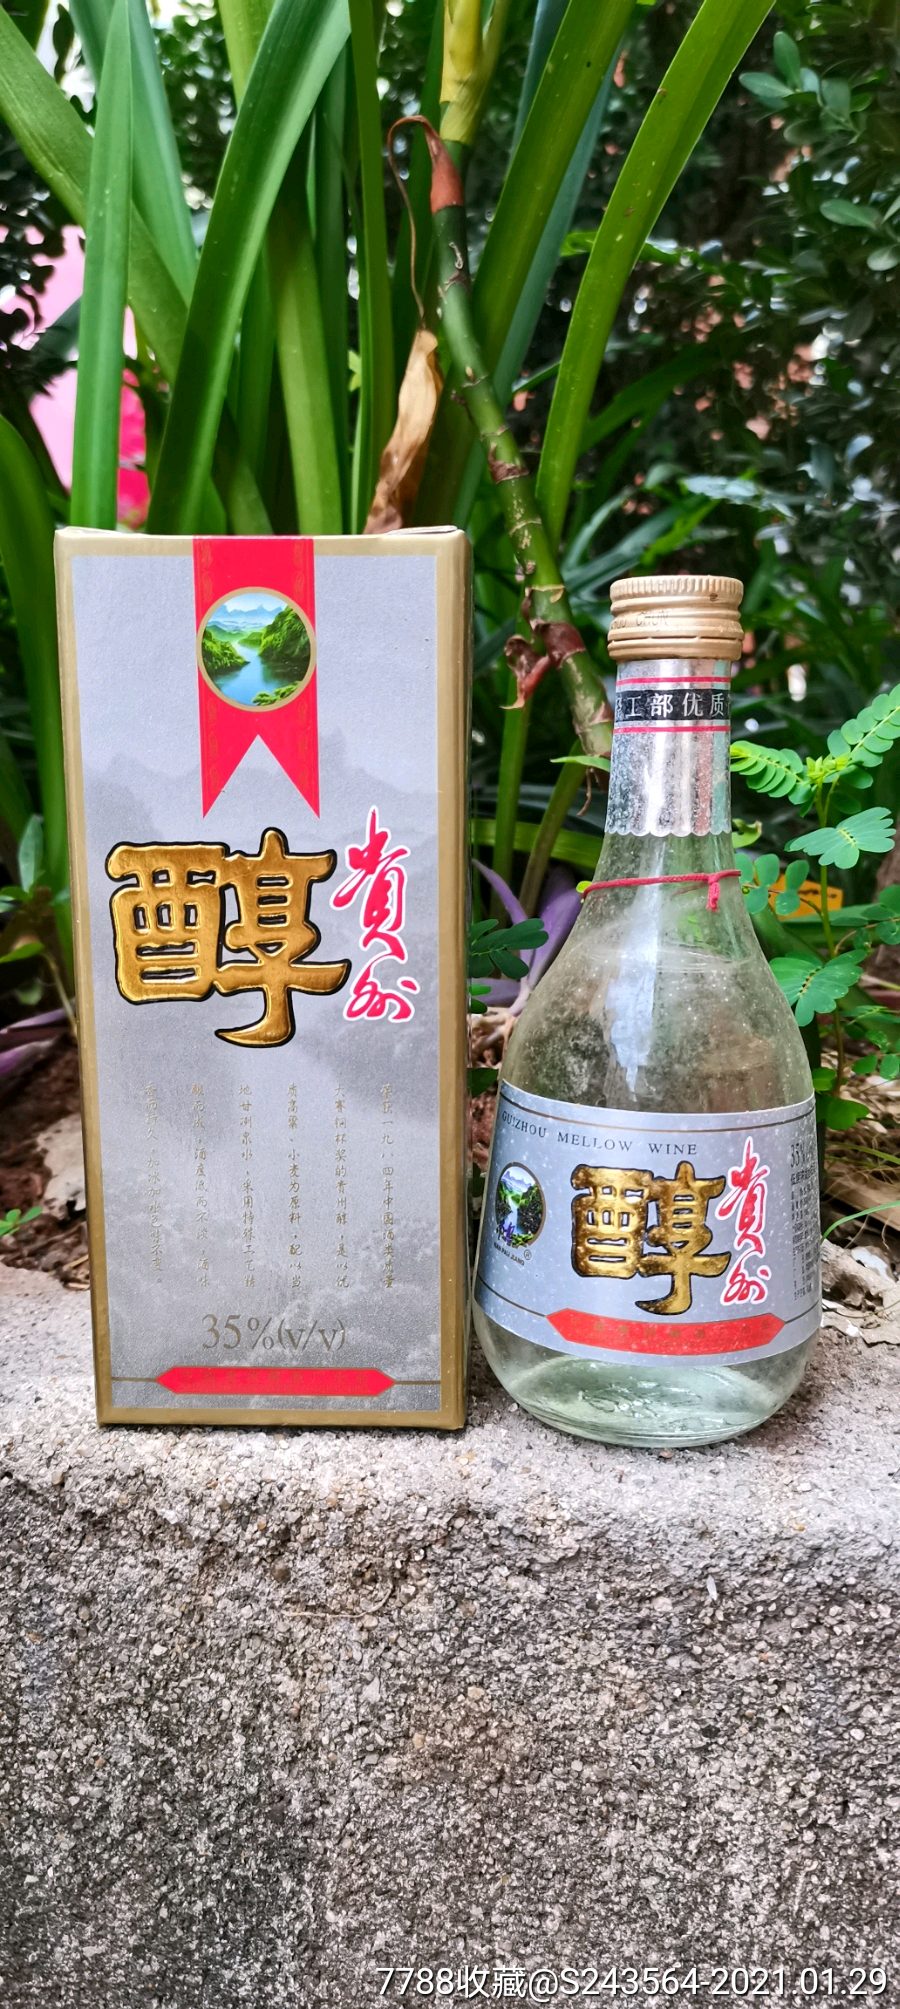 贵州特醇酒珍藏版图片